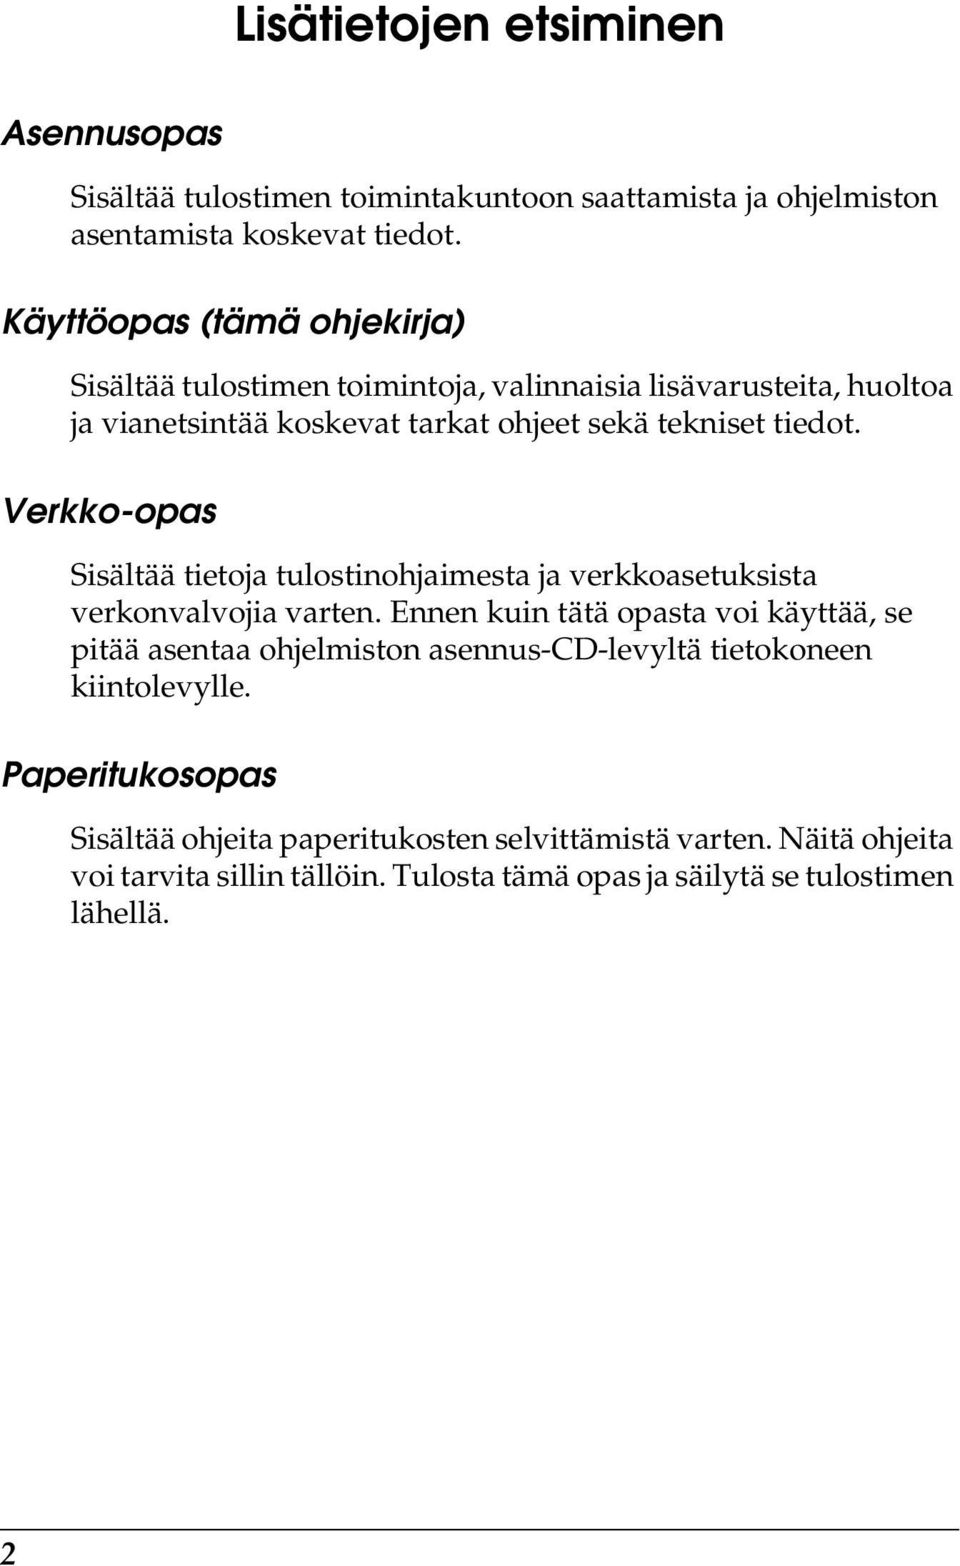 Verkko-opas Sisältää tietoja tulostinohjaimesta ja verkkoasetuksista verkonvalvojia varten.